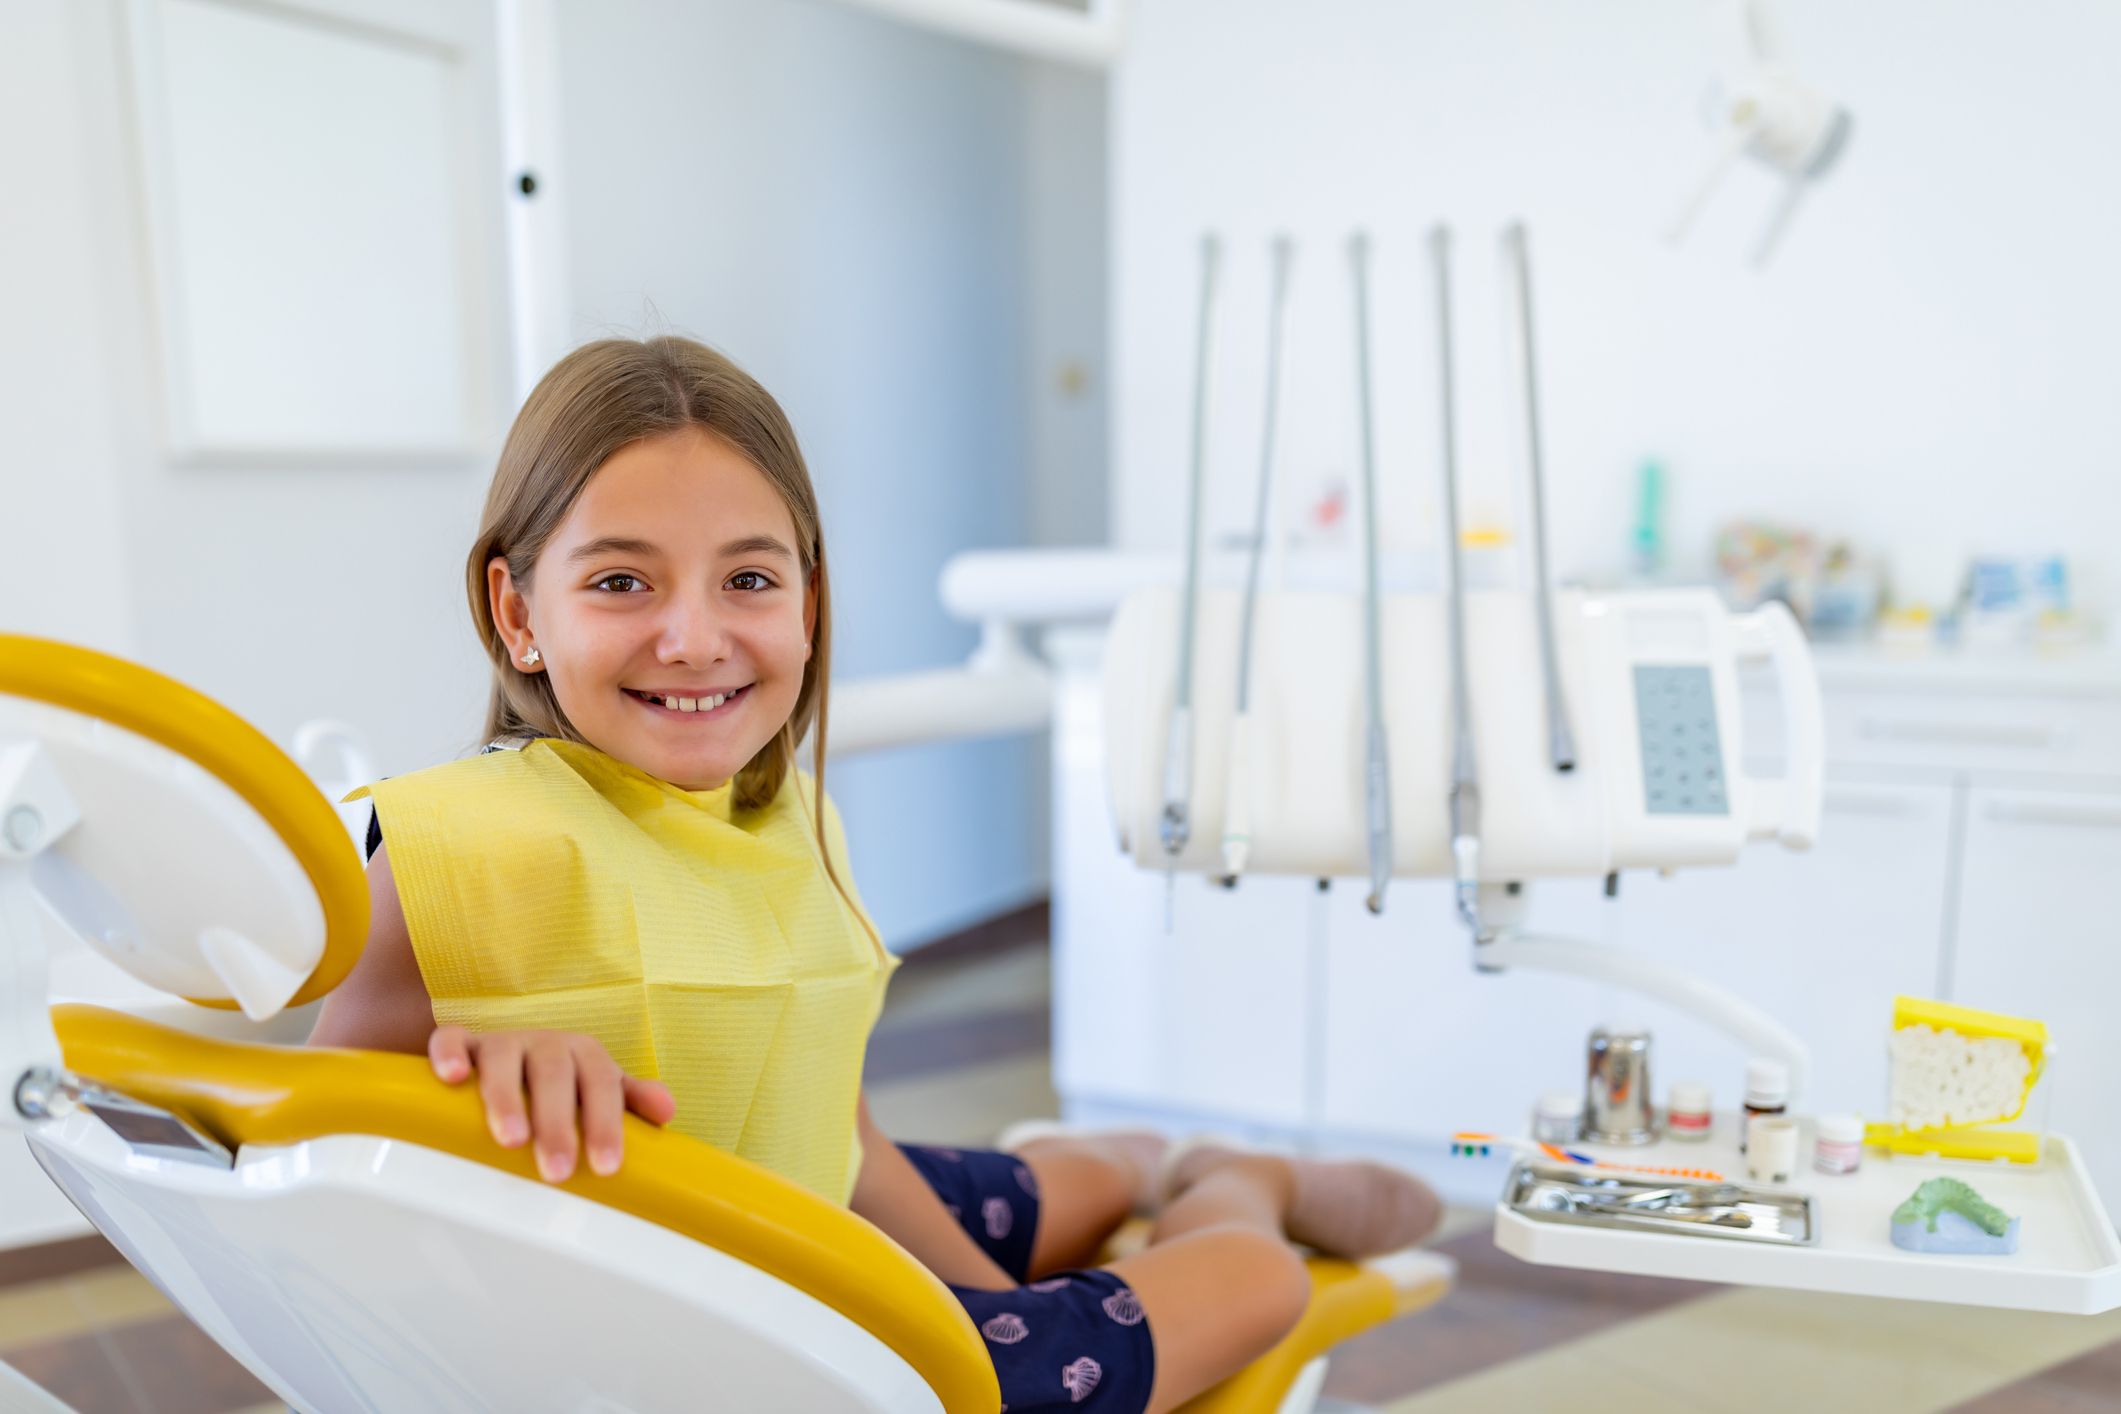 Ein lächelndes Kind bei einer Zahnarzt-Behandlung